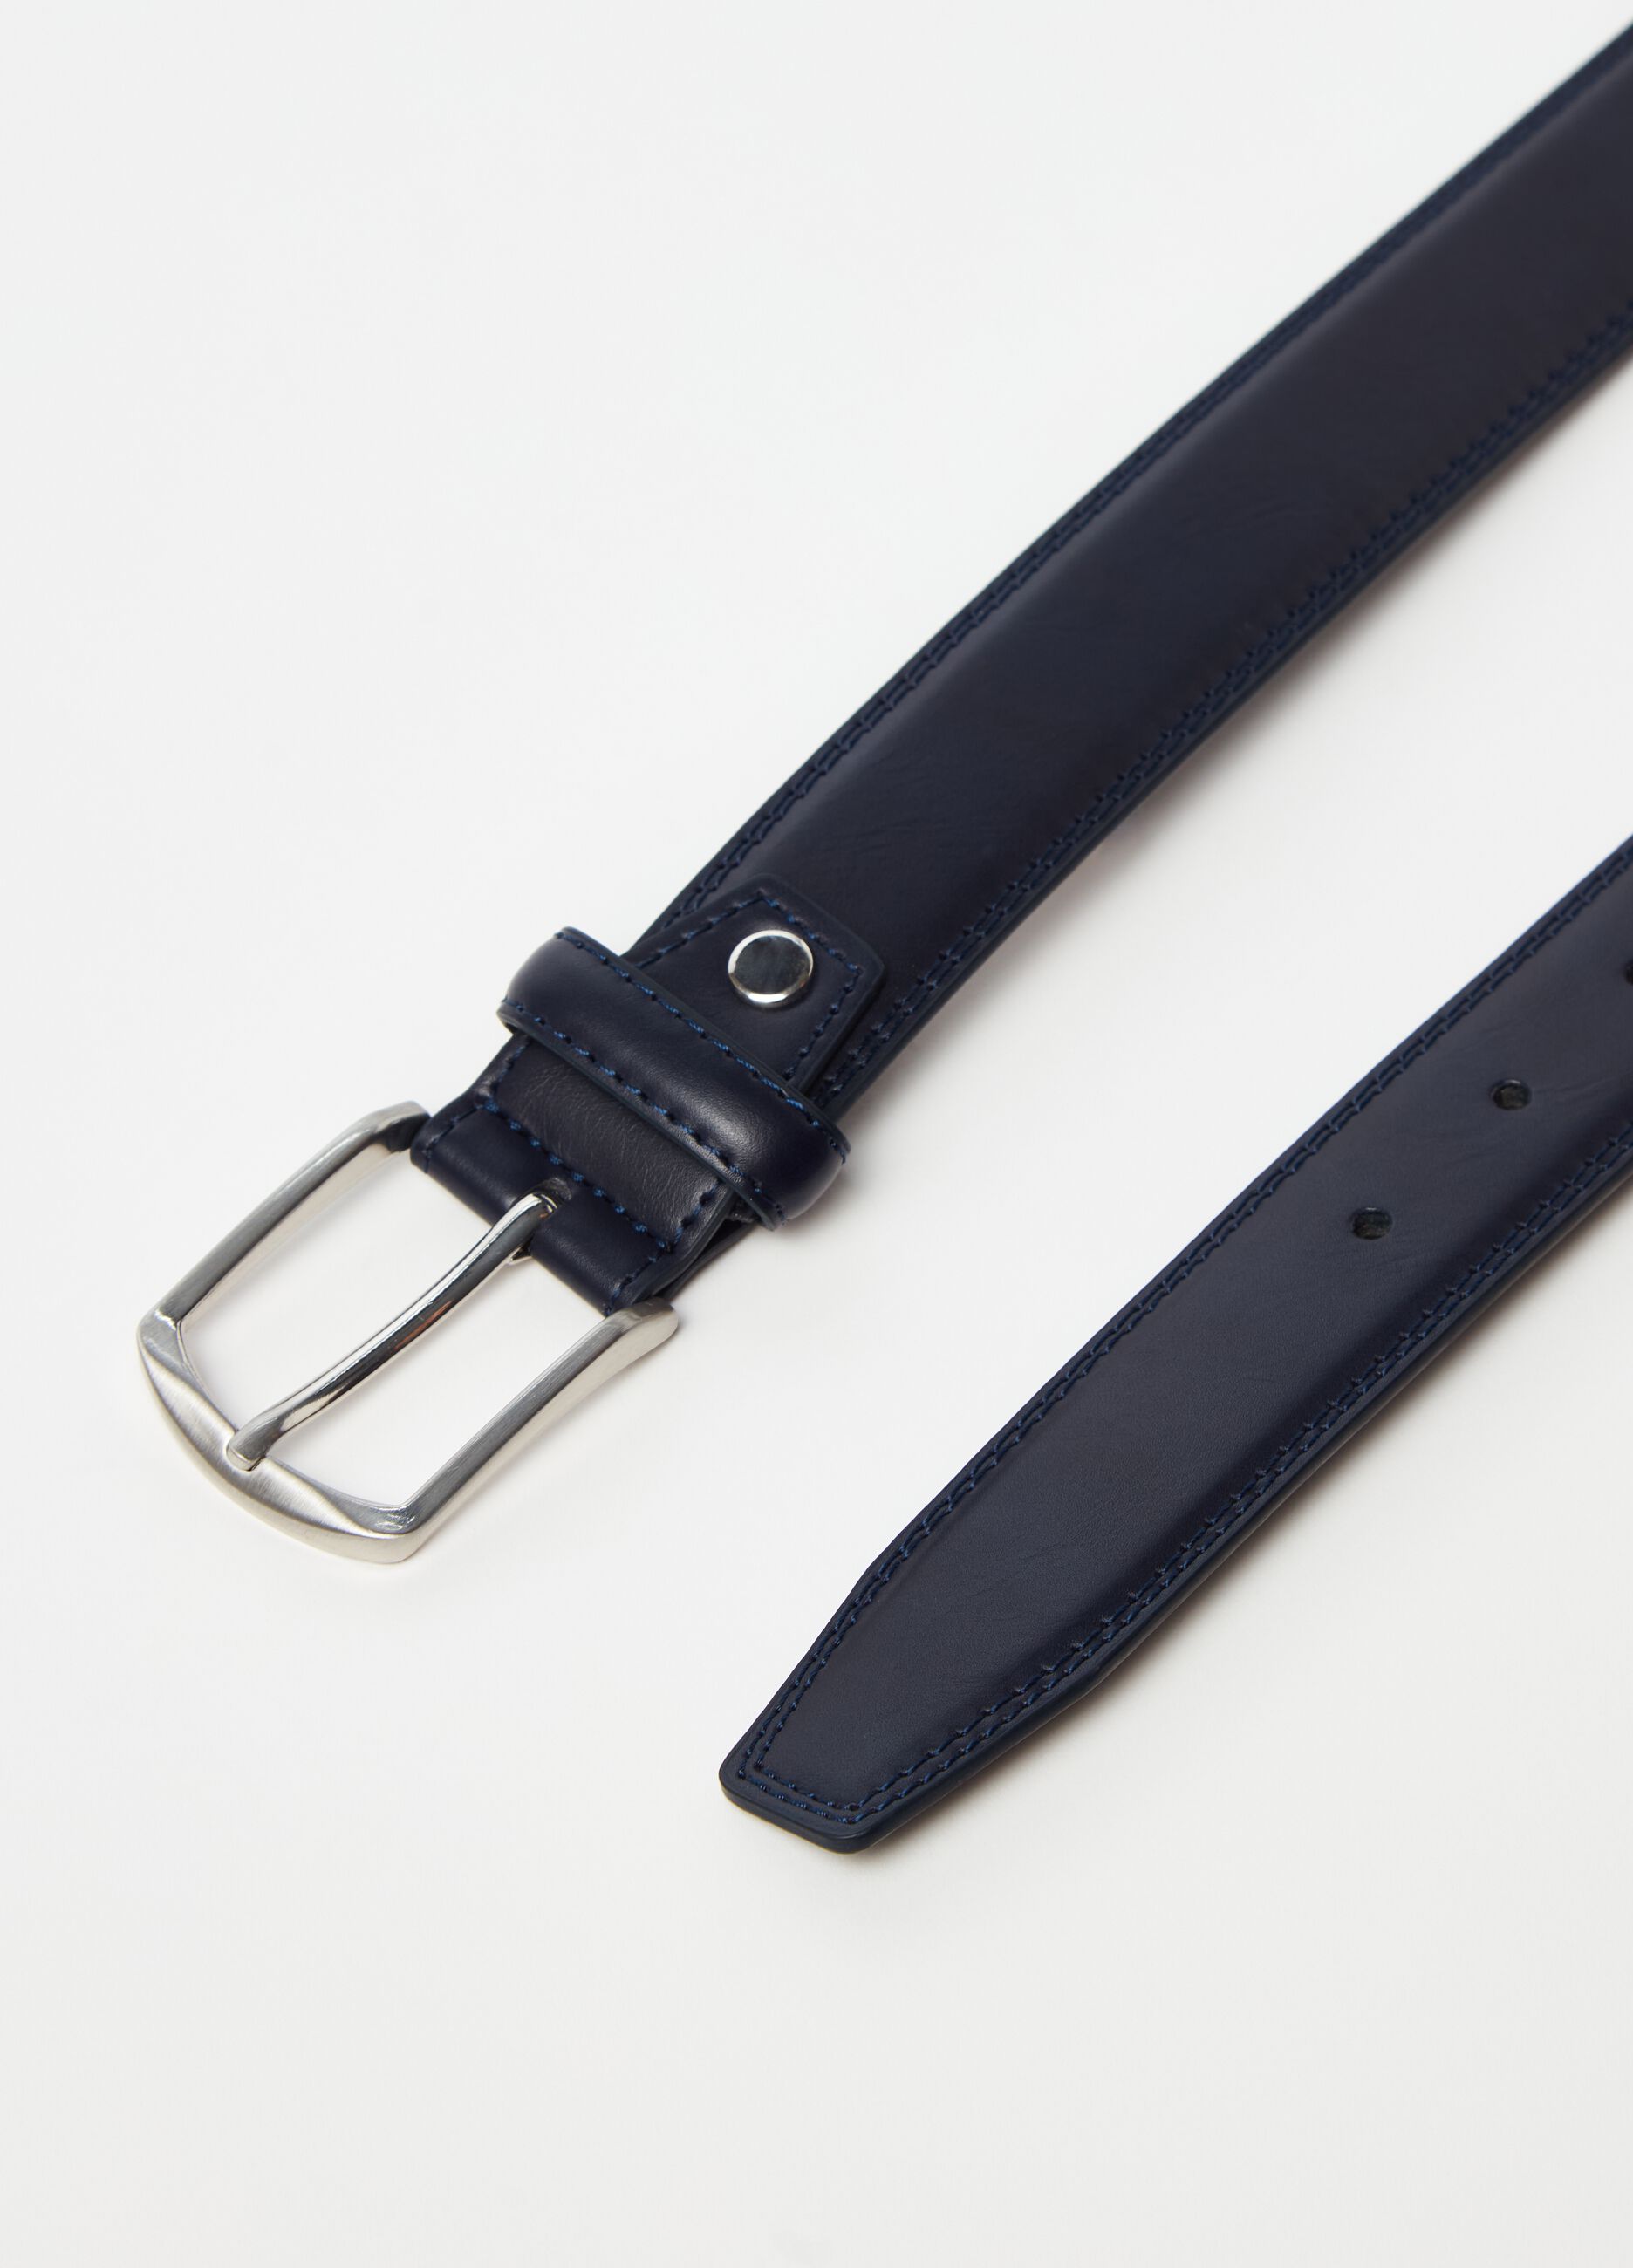 Skinny belt with metal buckle